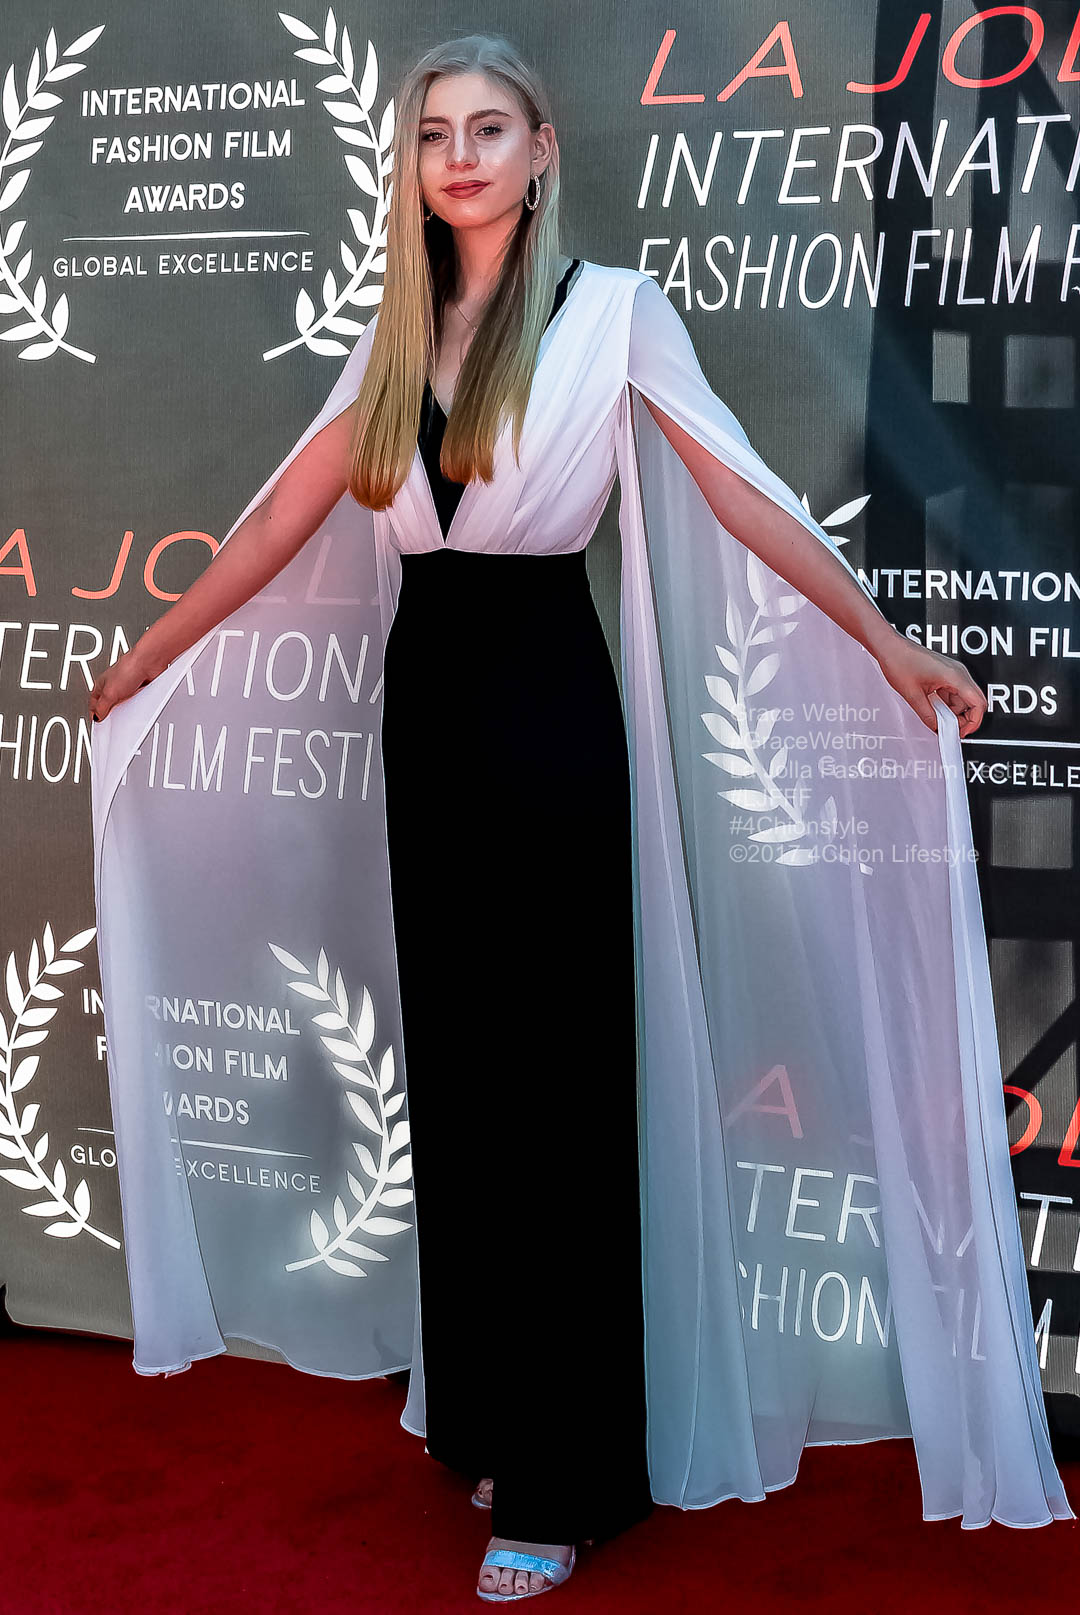 Grace Wethor Vogue La Jolla Fashion Film Festival Red Carpet Tammy Forchion LJFFF 4Chion Lifestyle